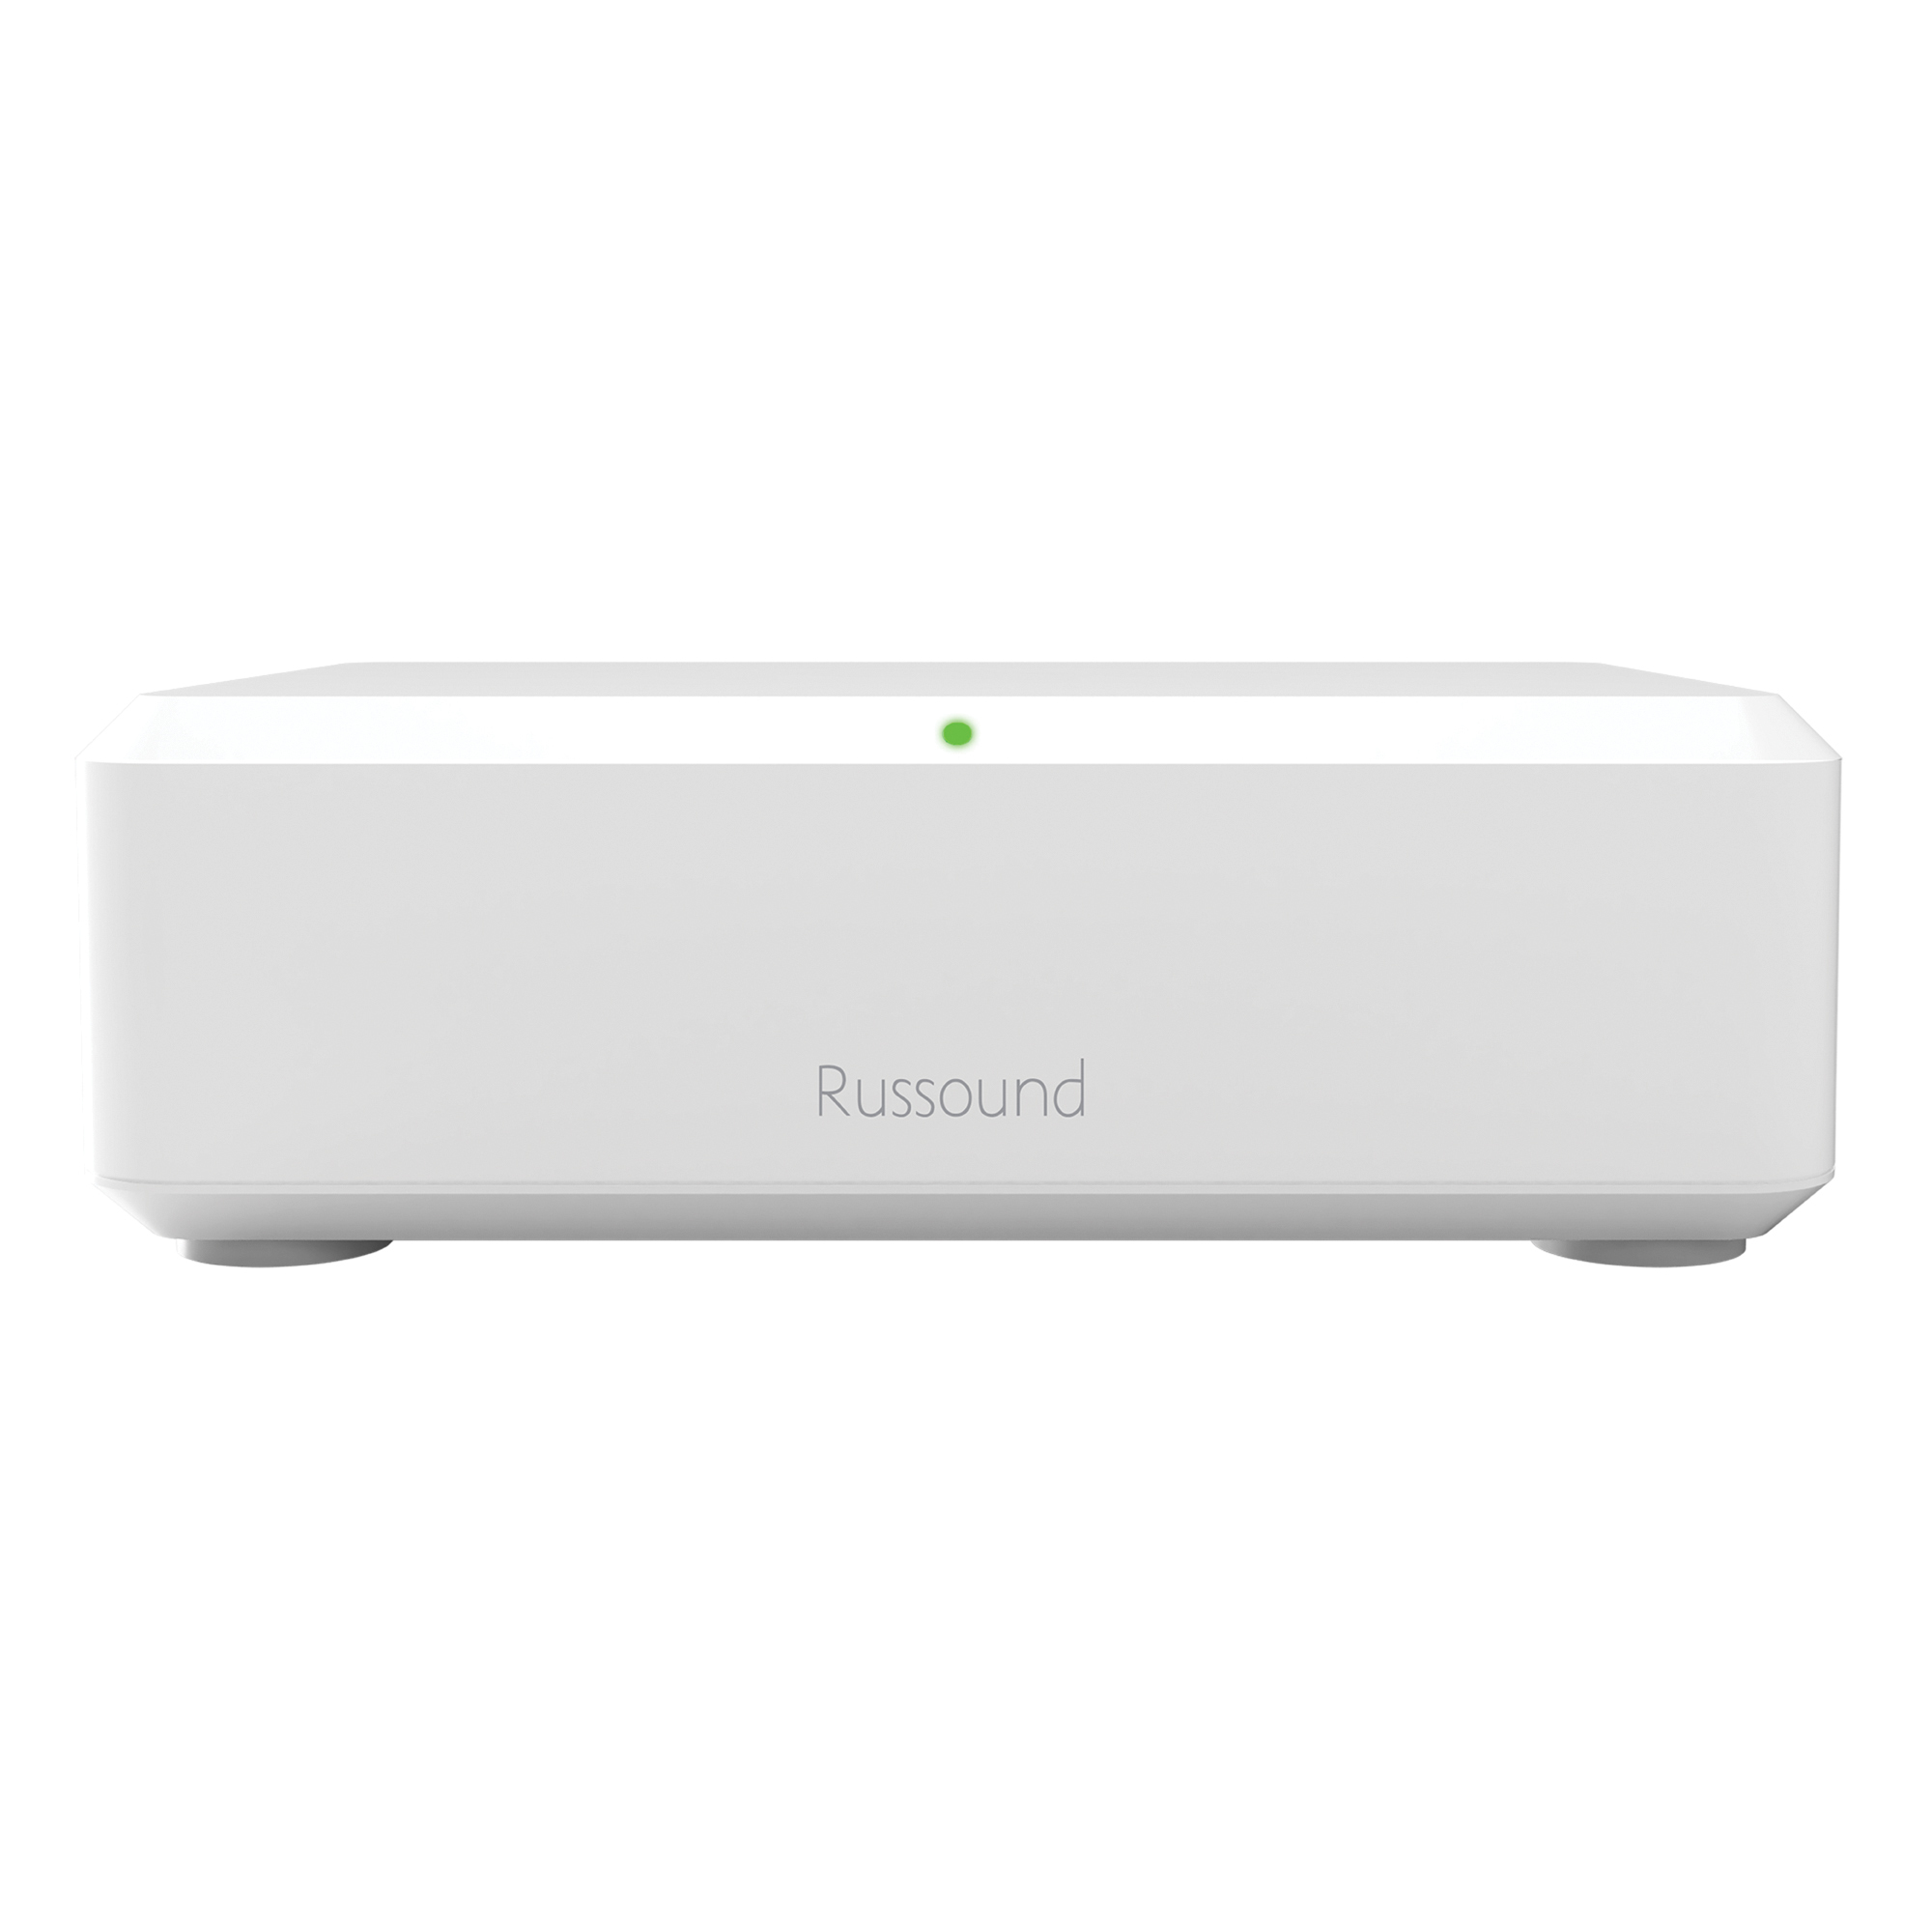 Russound, BTC-2X Bluetooth Remote Transceiver, Model 2460-853692